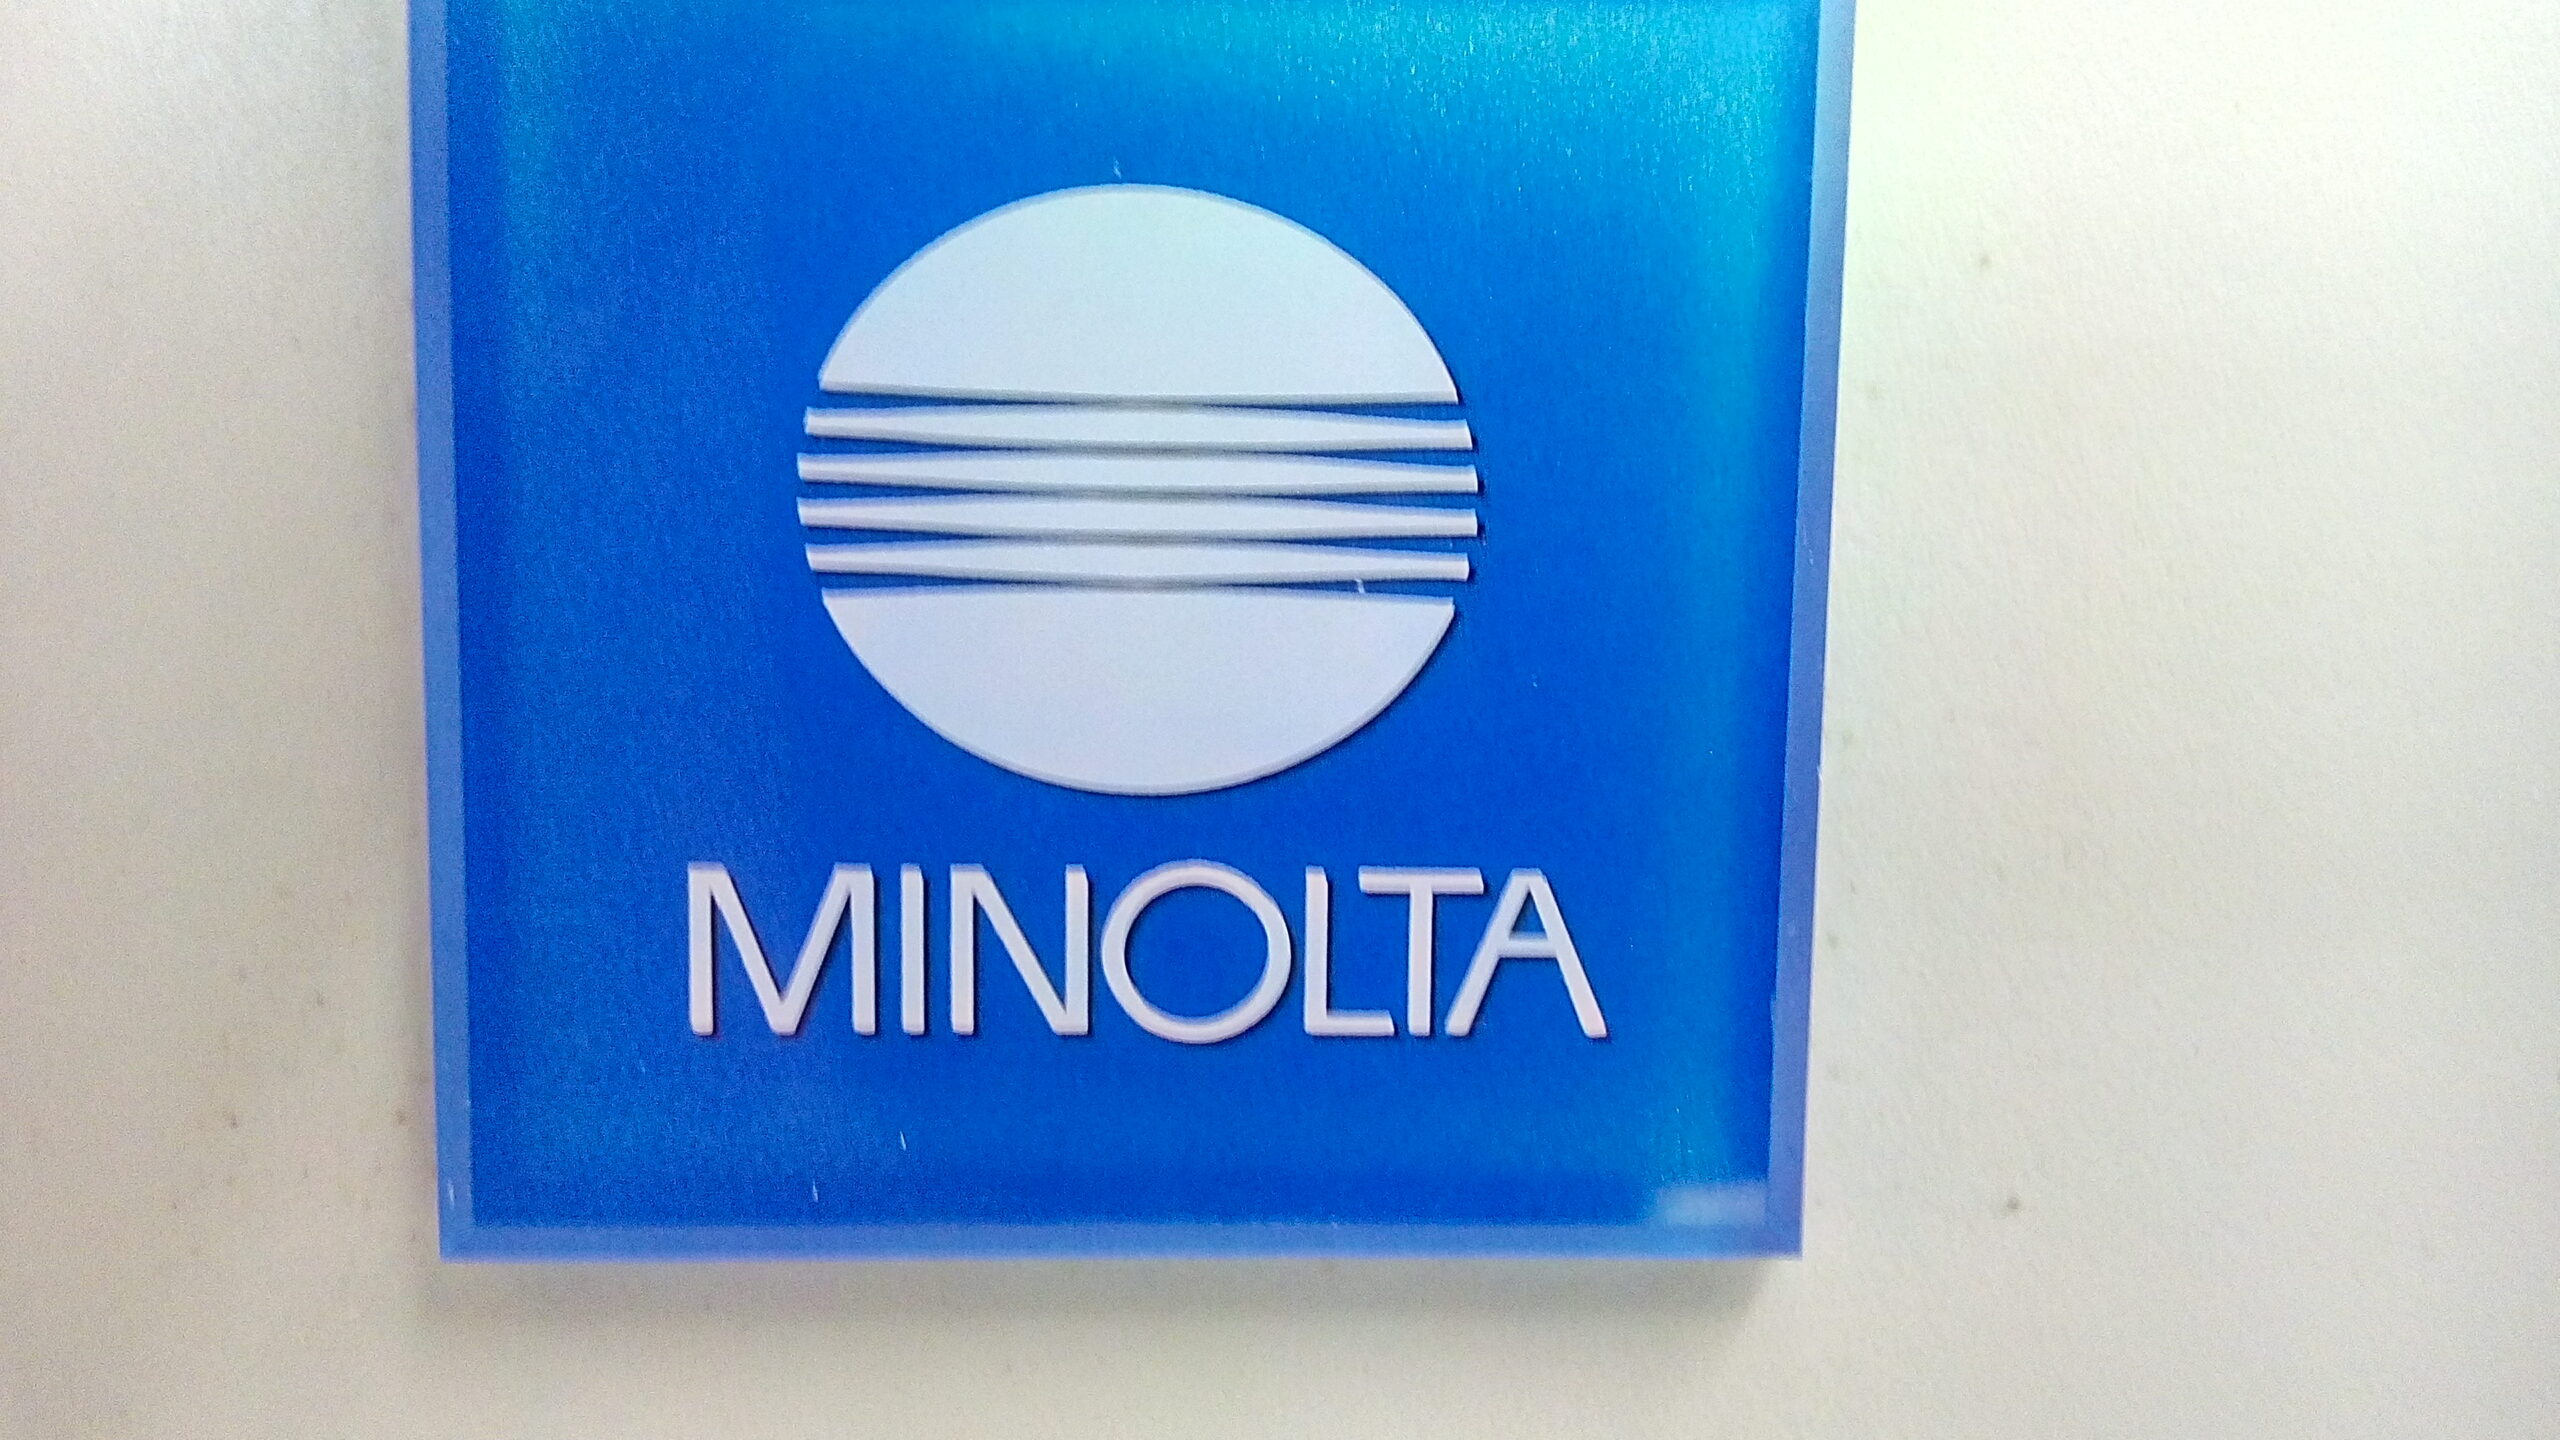 Minolta Copier Rentals Gulf Office Technologies